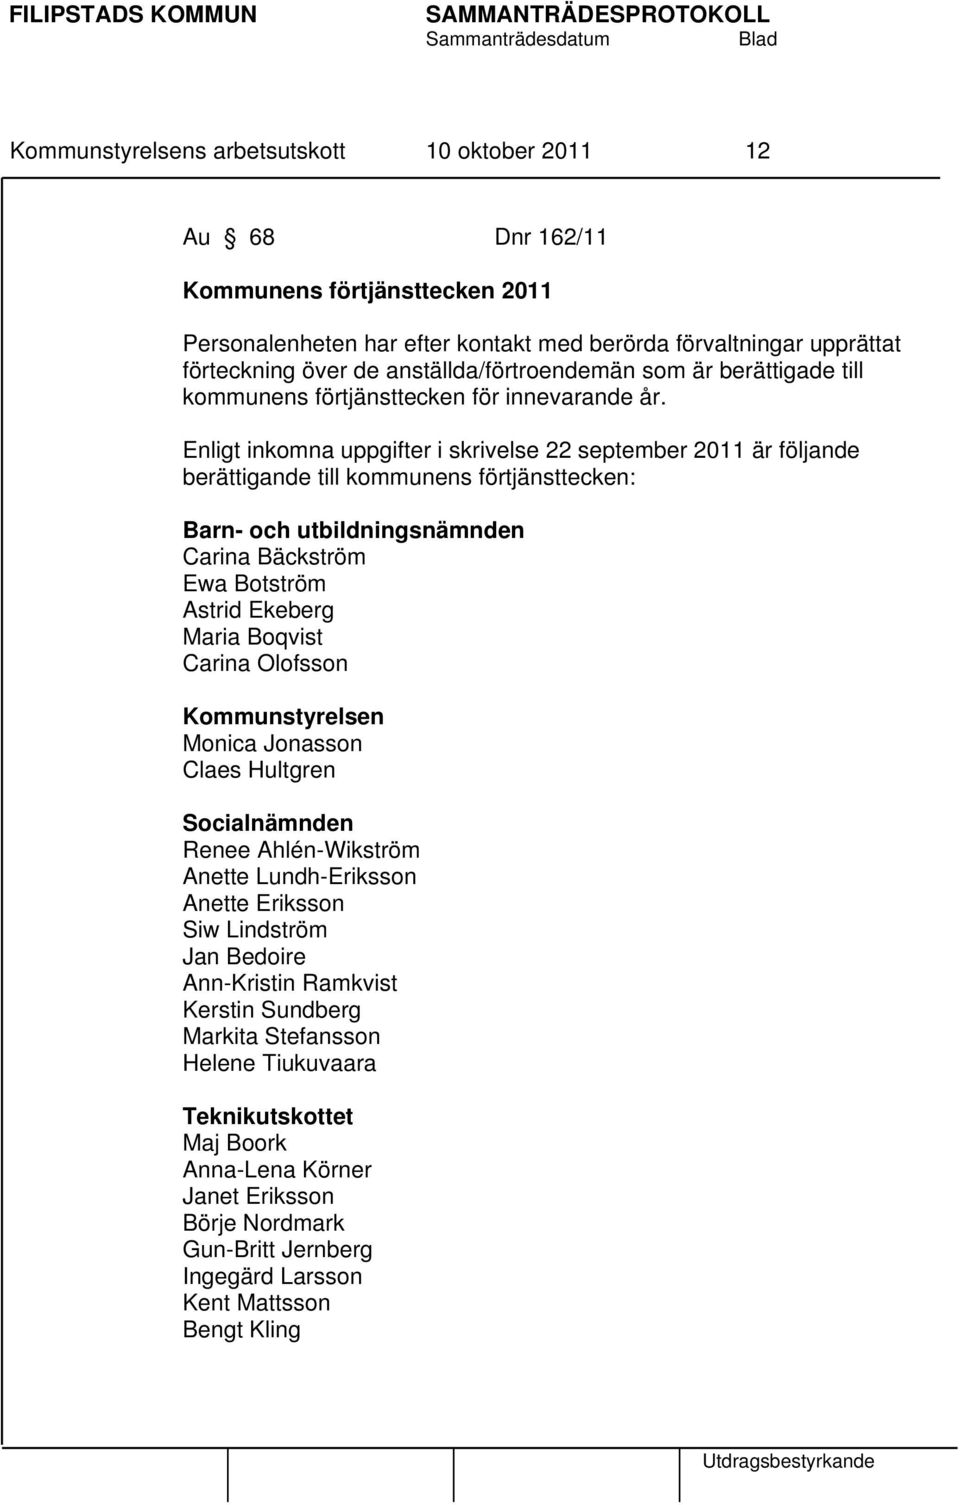 Enligt inkomna uppgifter i skrivelse 22 september 2011 är följande berättigande till kommunens förtjänsttecken: Barn- och utbildningsnämnden Carina Bäckström Ewa Botström Astrid Ekeberg Maria Boqvist